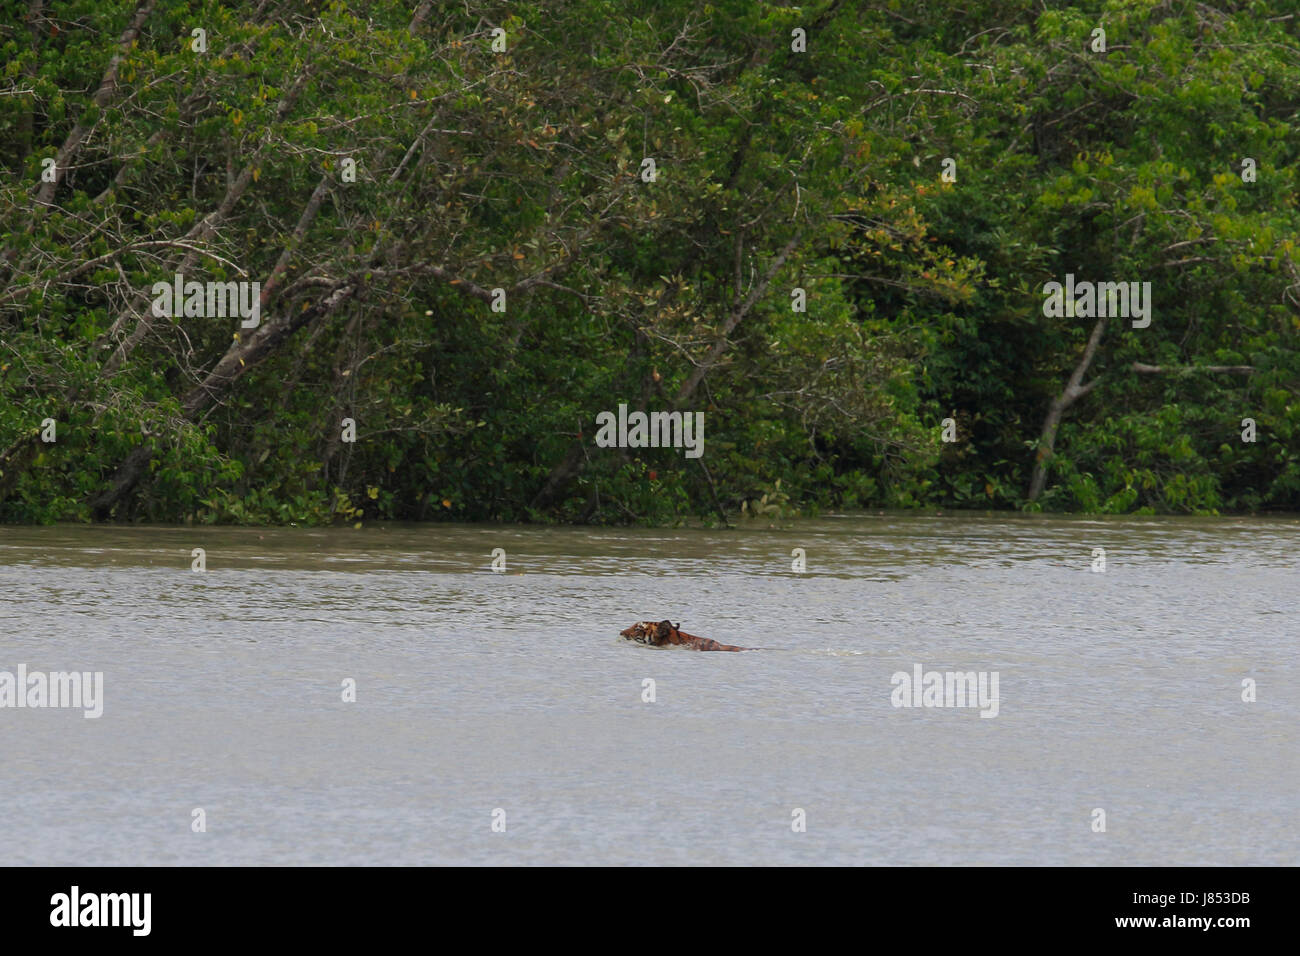 Ein Bengal Tiger schwimmt in einem Bach in der Nähe der Wallfahrtskirche Katka in den Sundarbans, ein UNESCO-Weltkulturerbe in Bangladesch. Stockfoto